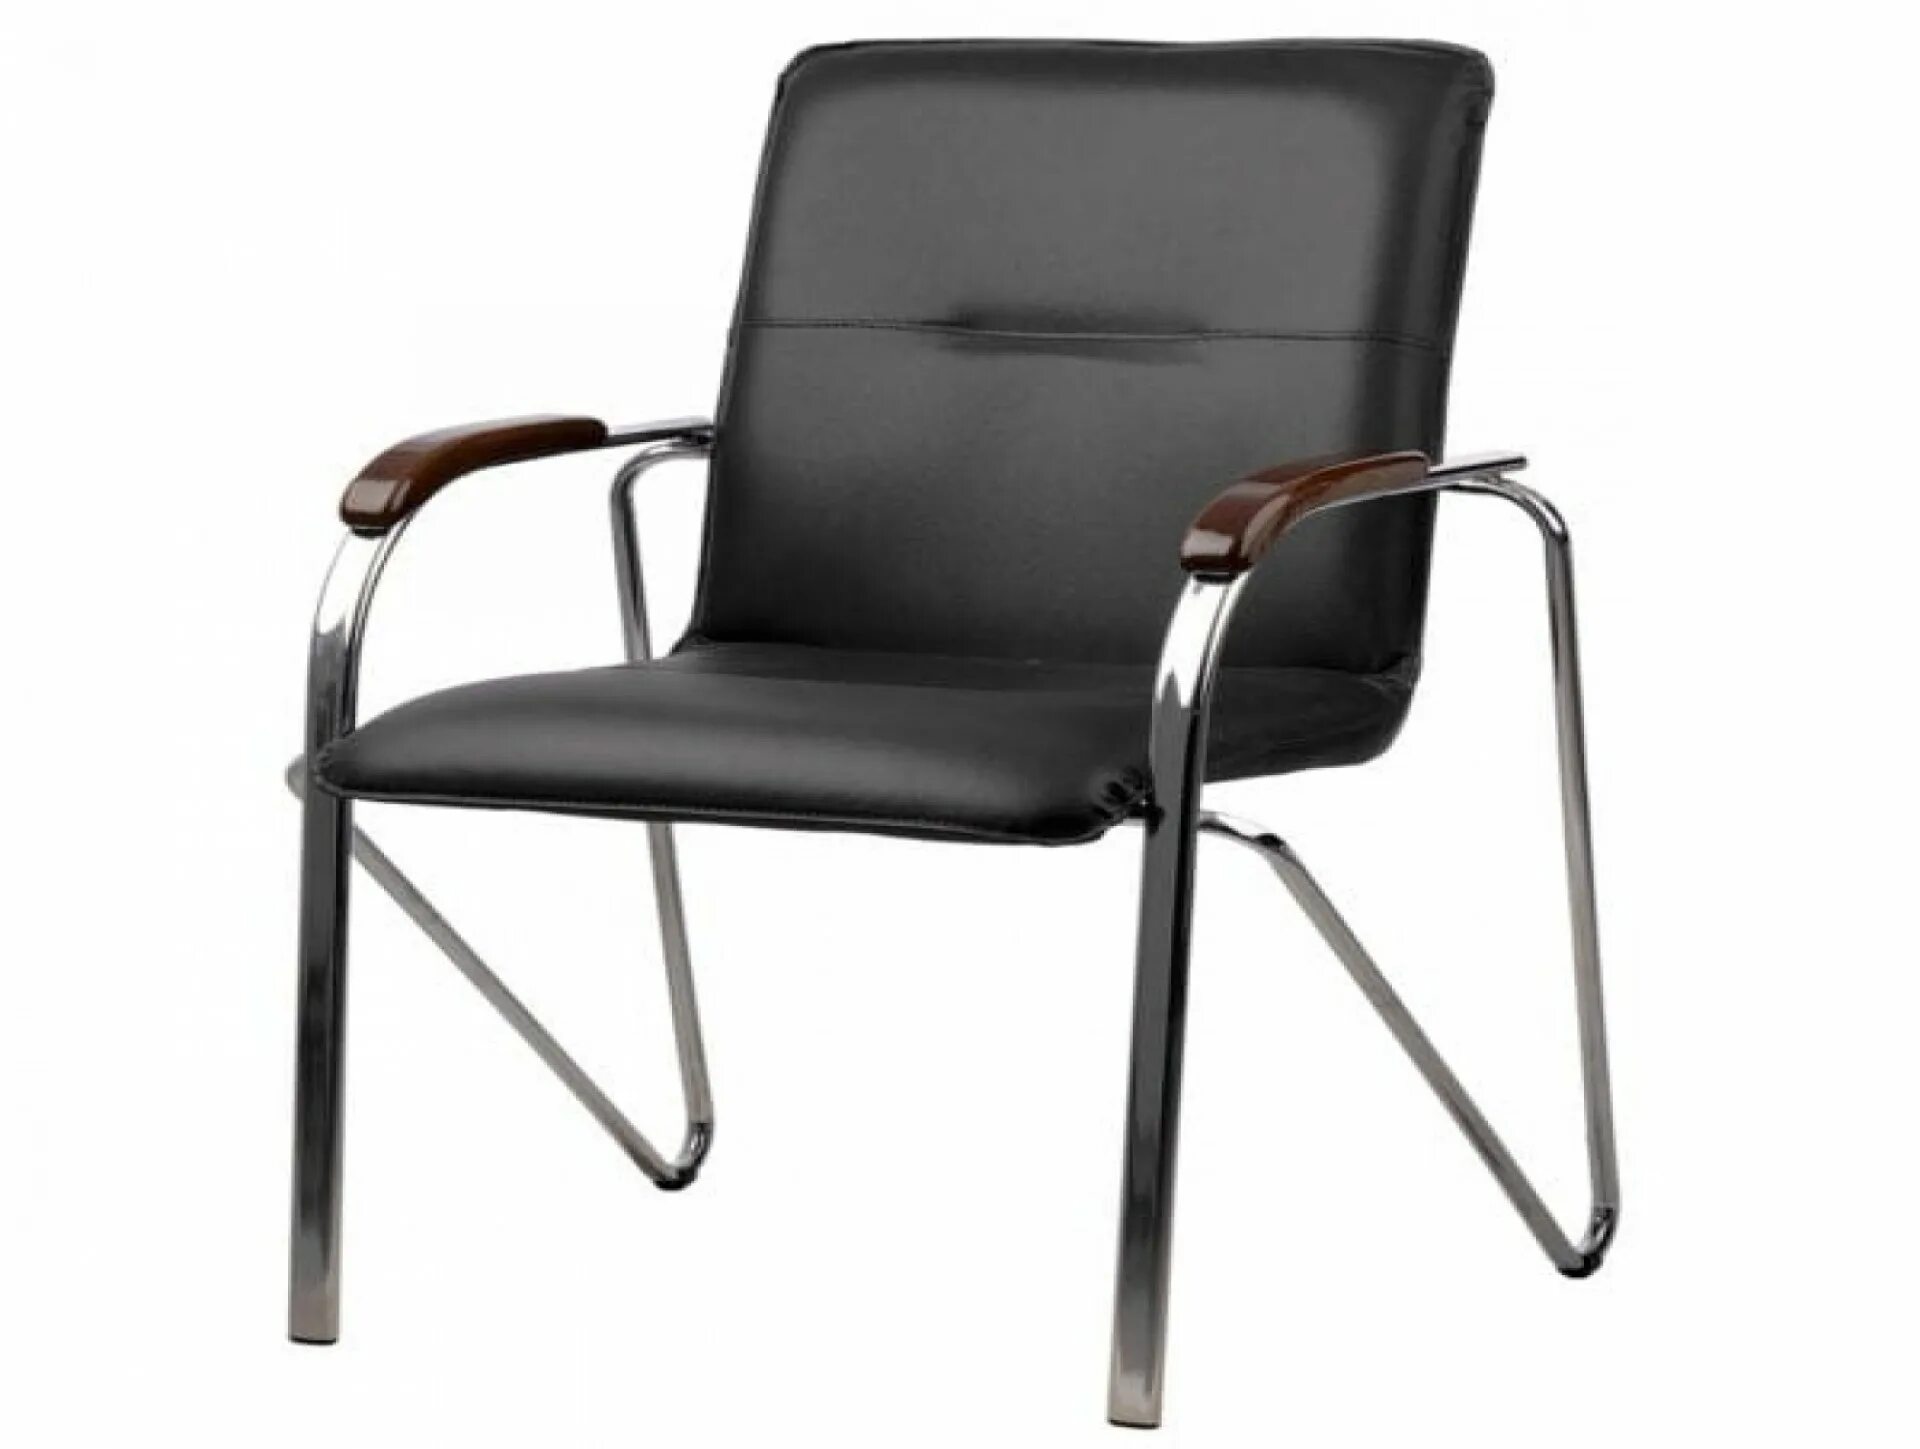 Купить конференц стулья. Конференц-кресло fa_Samba Chr к/з черный do350/орех. Кресло Самба ru 63 61h90 v14.1.031 иск.кожа черный подл орех. Кресло Samba (СН-850). Стул Самба хром бежевый.